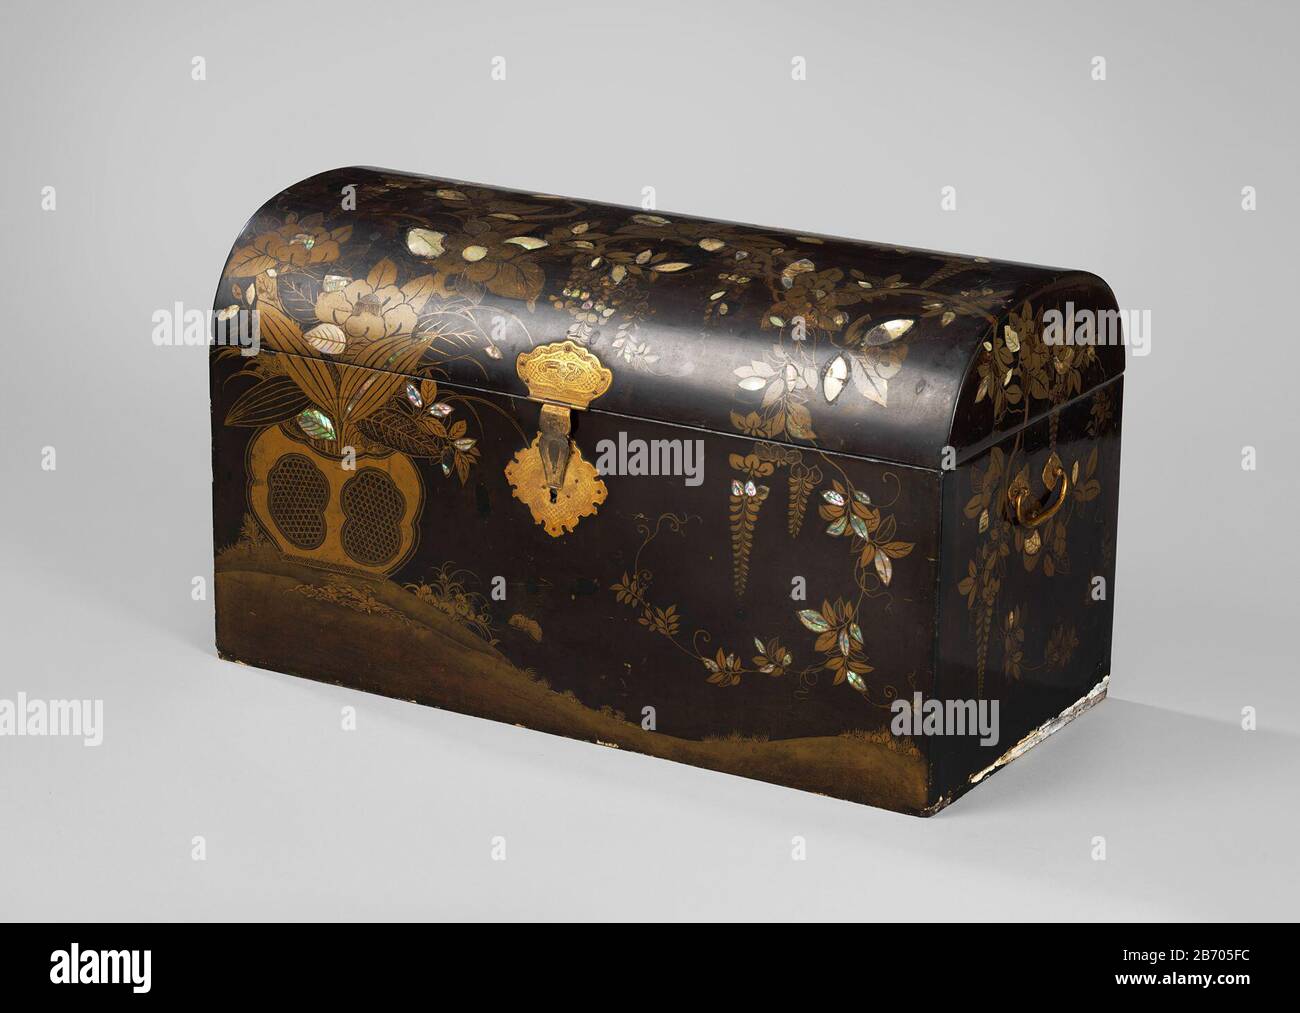 Koffer op voetstuk, versierd in zwart met van goud en parelmoer Koffer op voetstuk, zwart met bloemen van goud en parelmoer. Met koperen sleutel. Manufacturer : Plaats manufacture: Japan